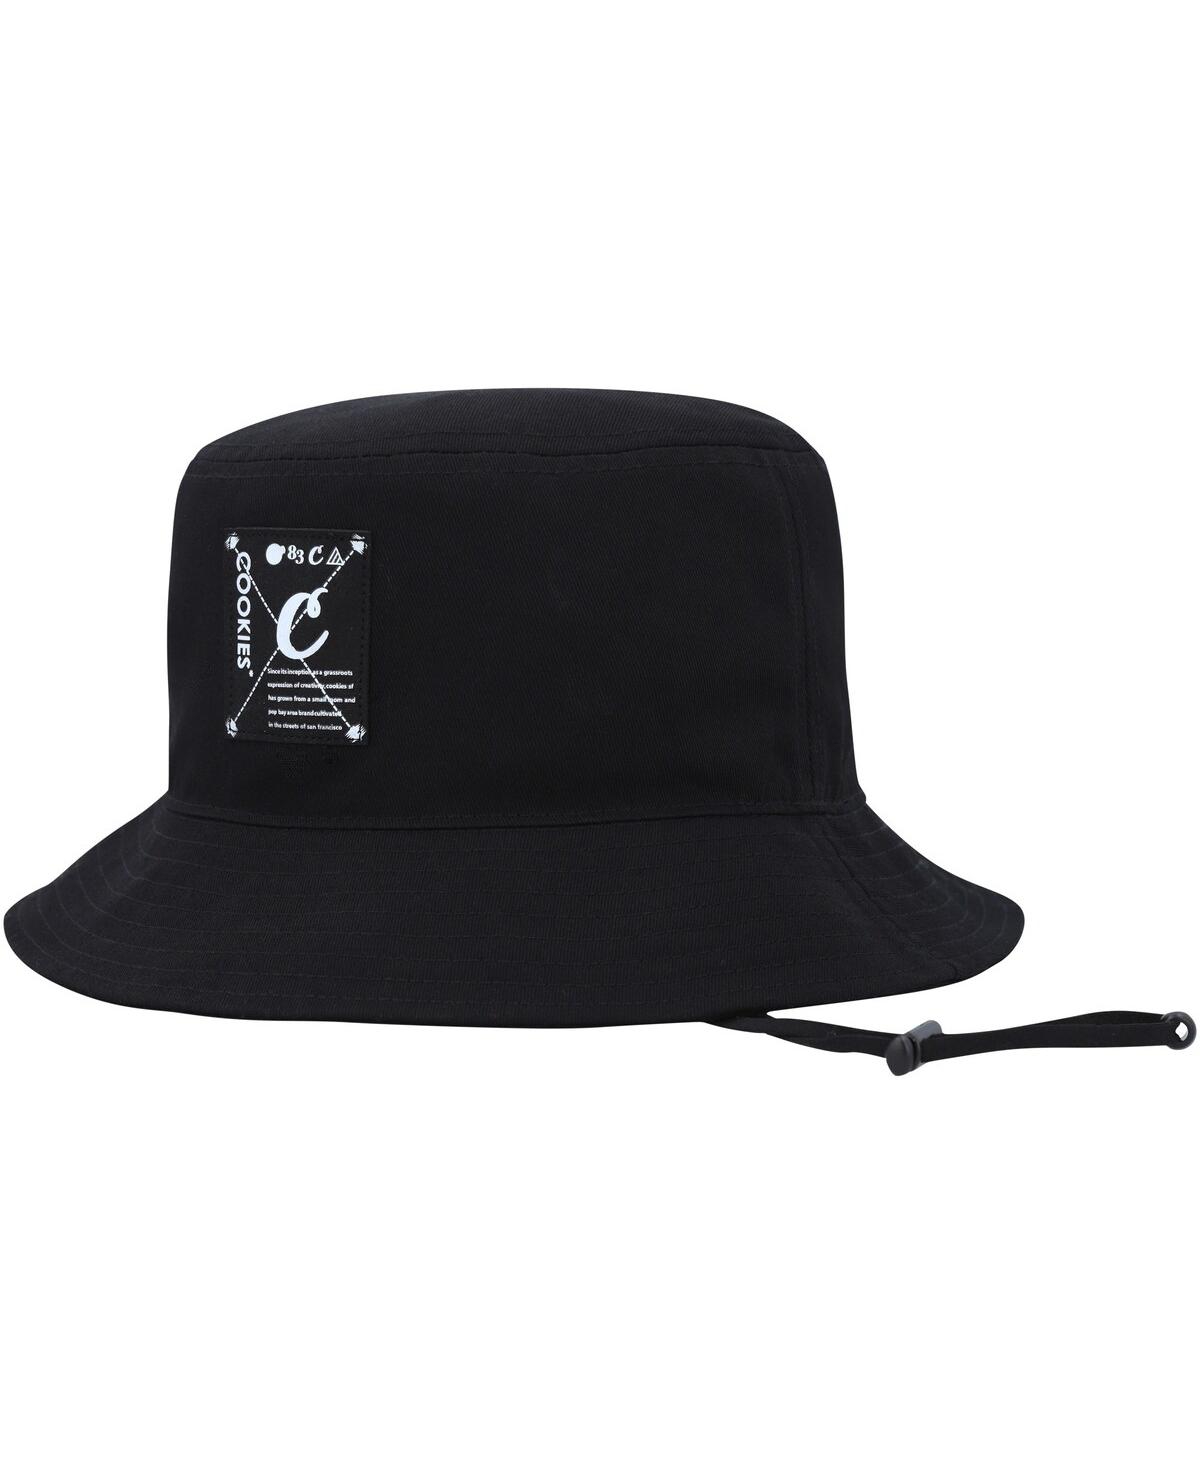 Cookies Men's  Clothing Black Key Largo Bucket Hat